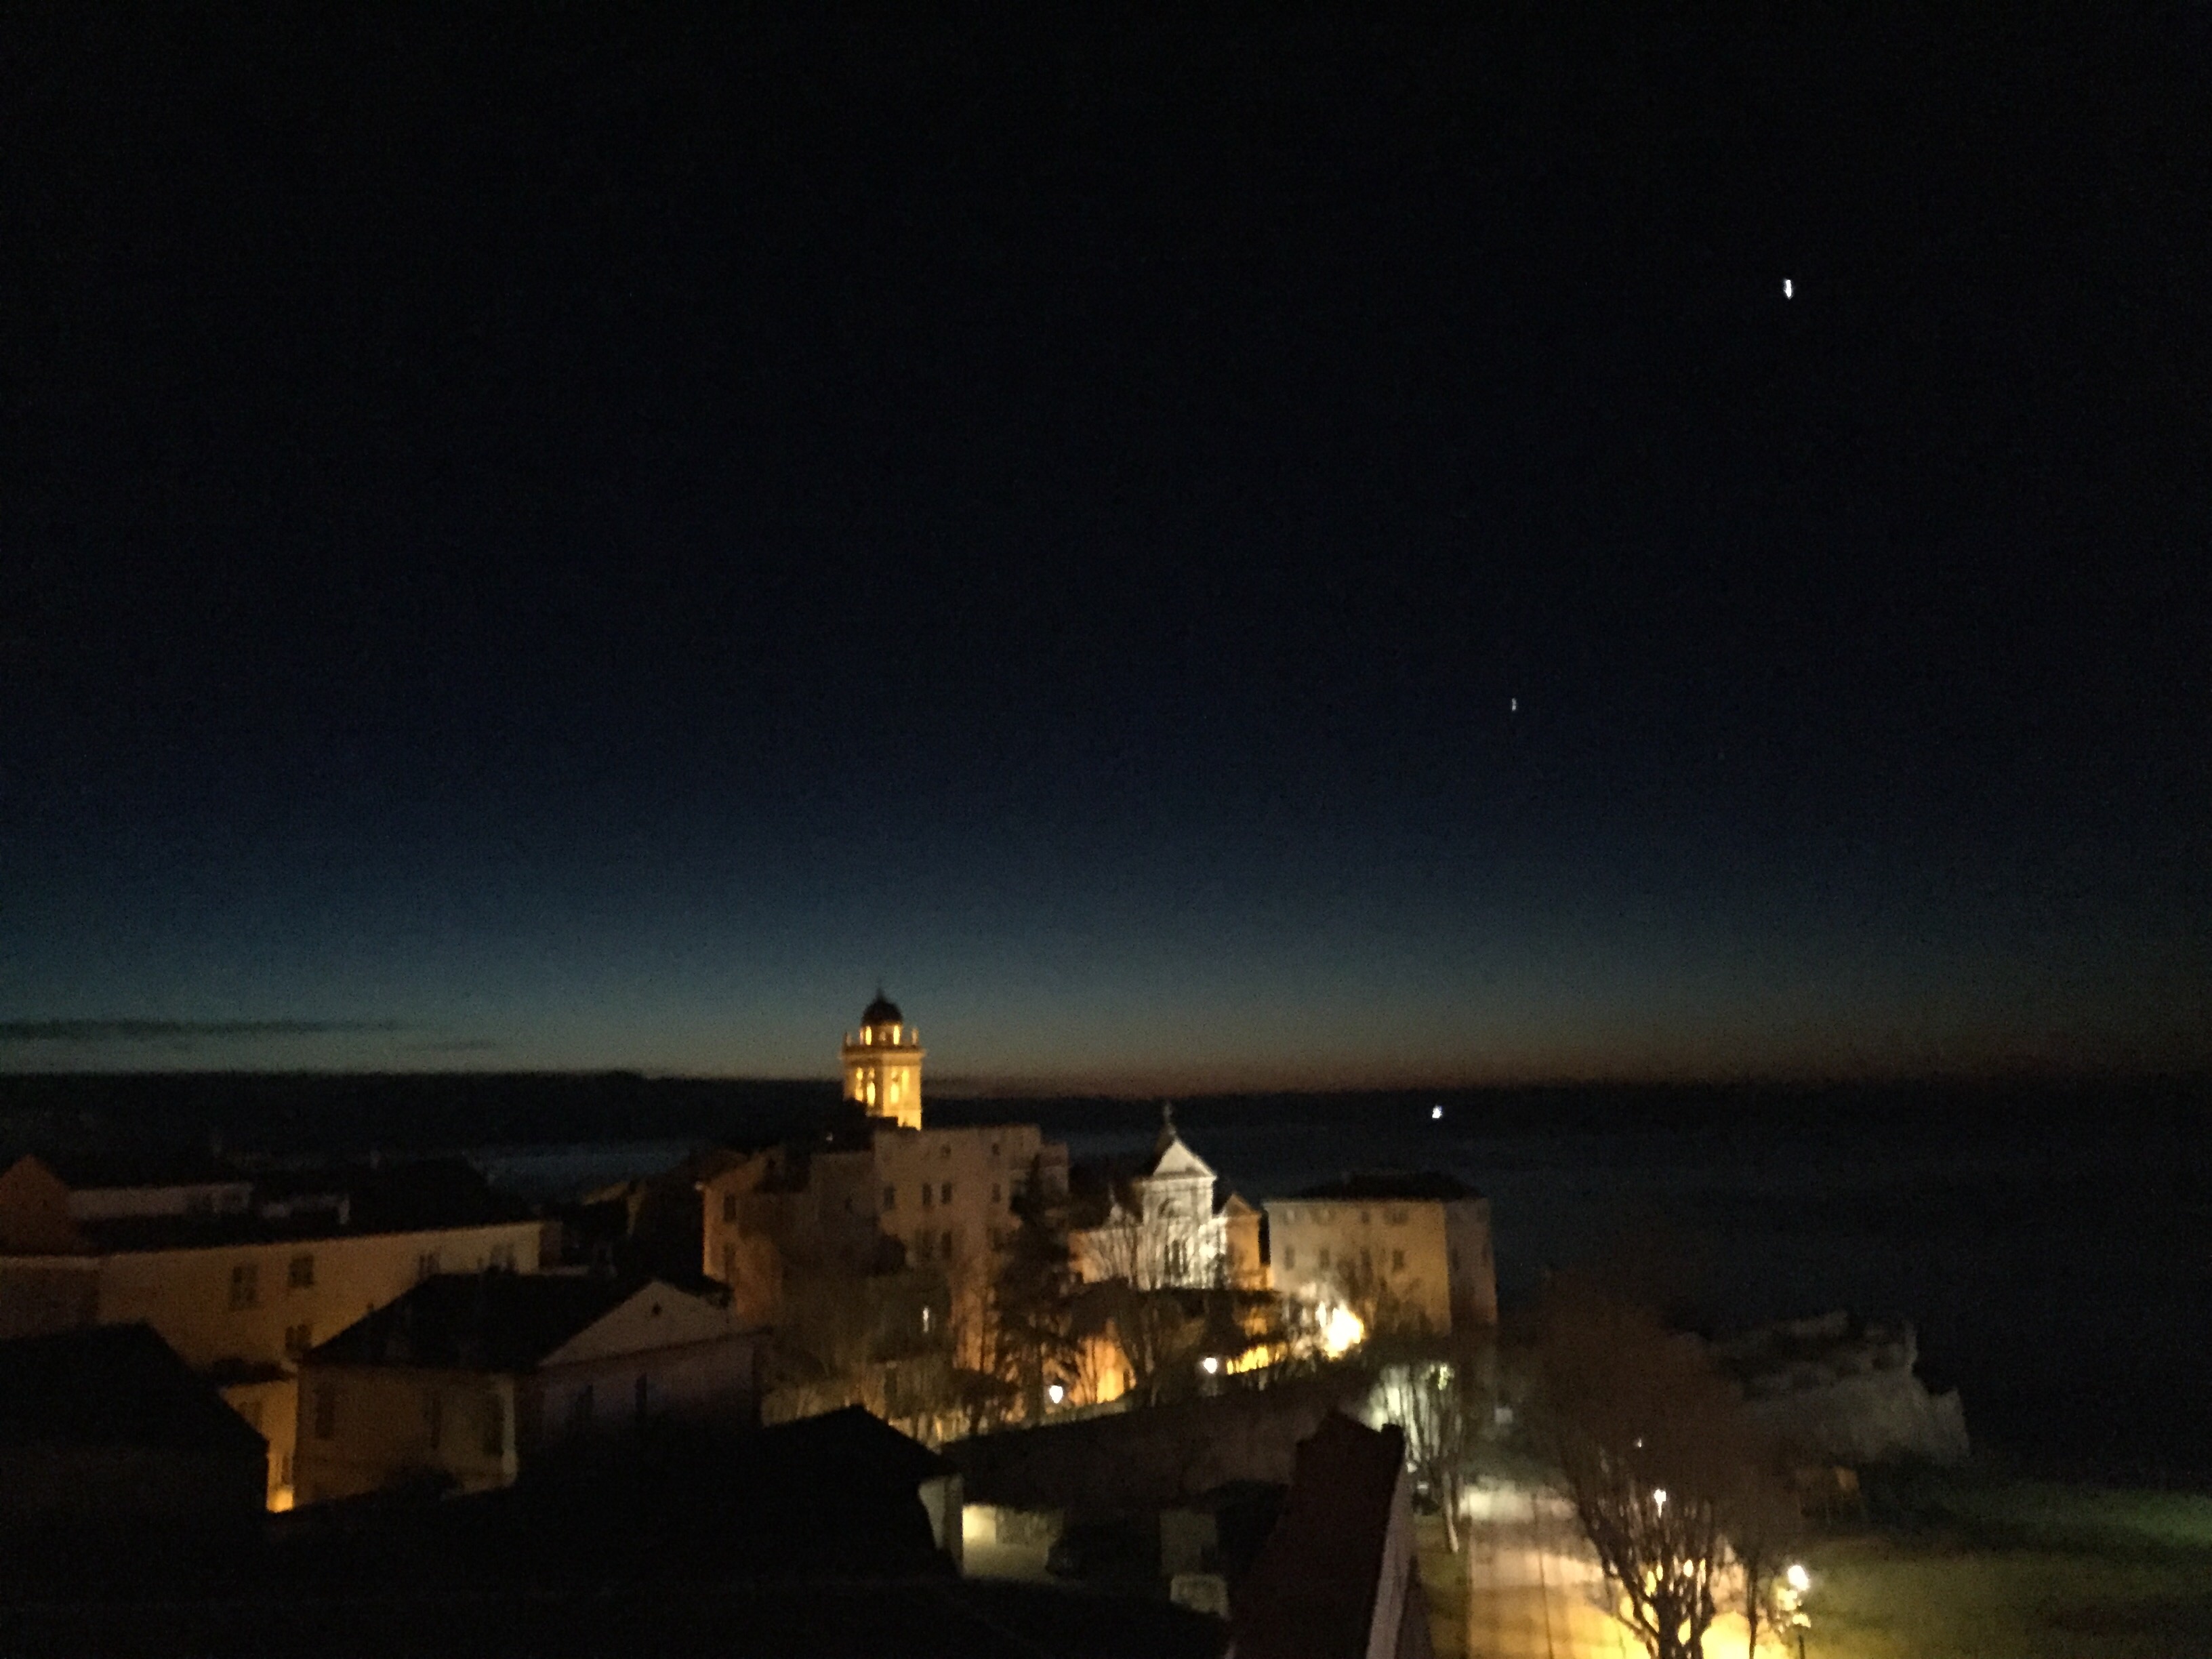 La photo du jour : L'heure bleue de Bastia